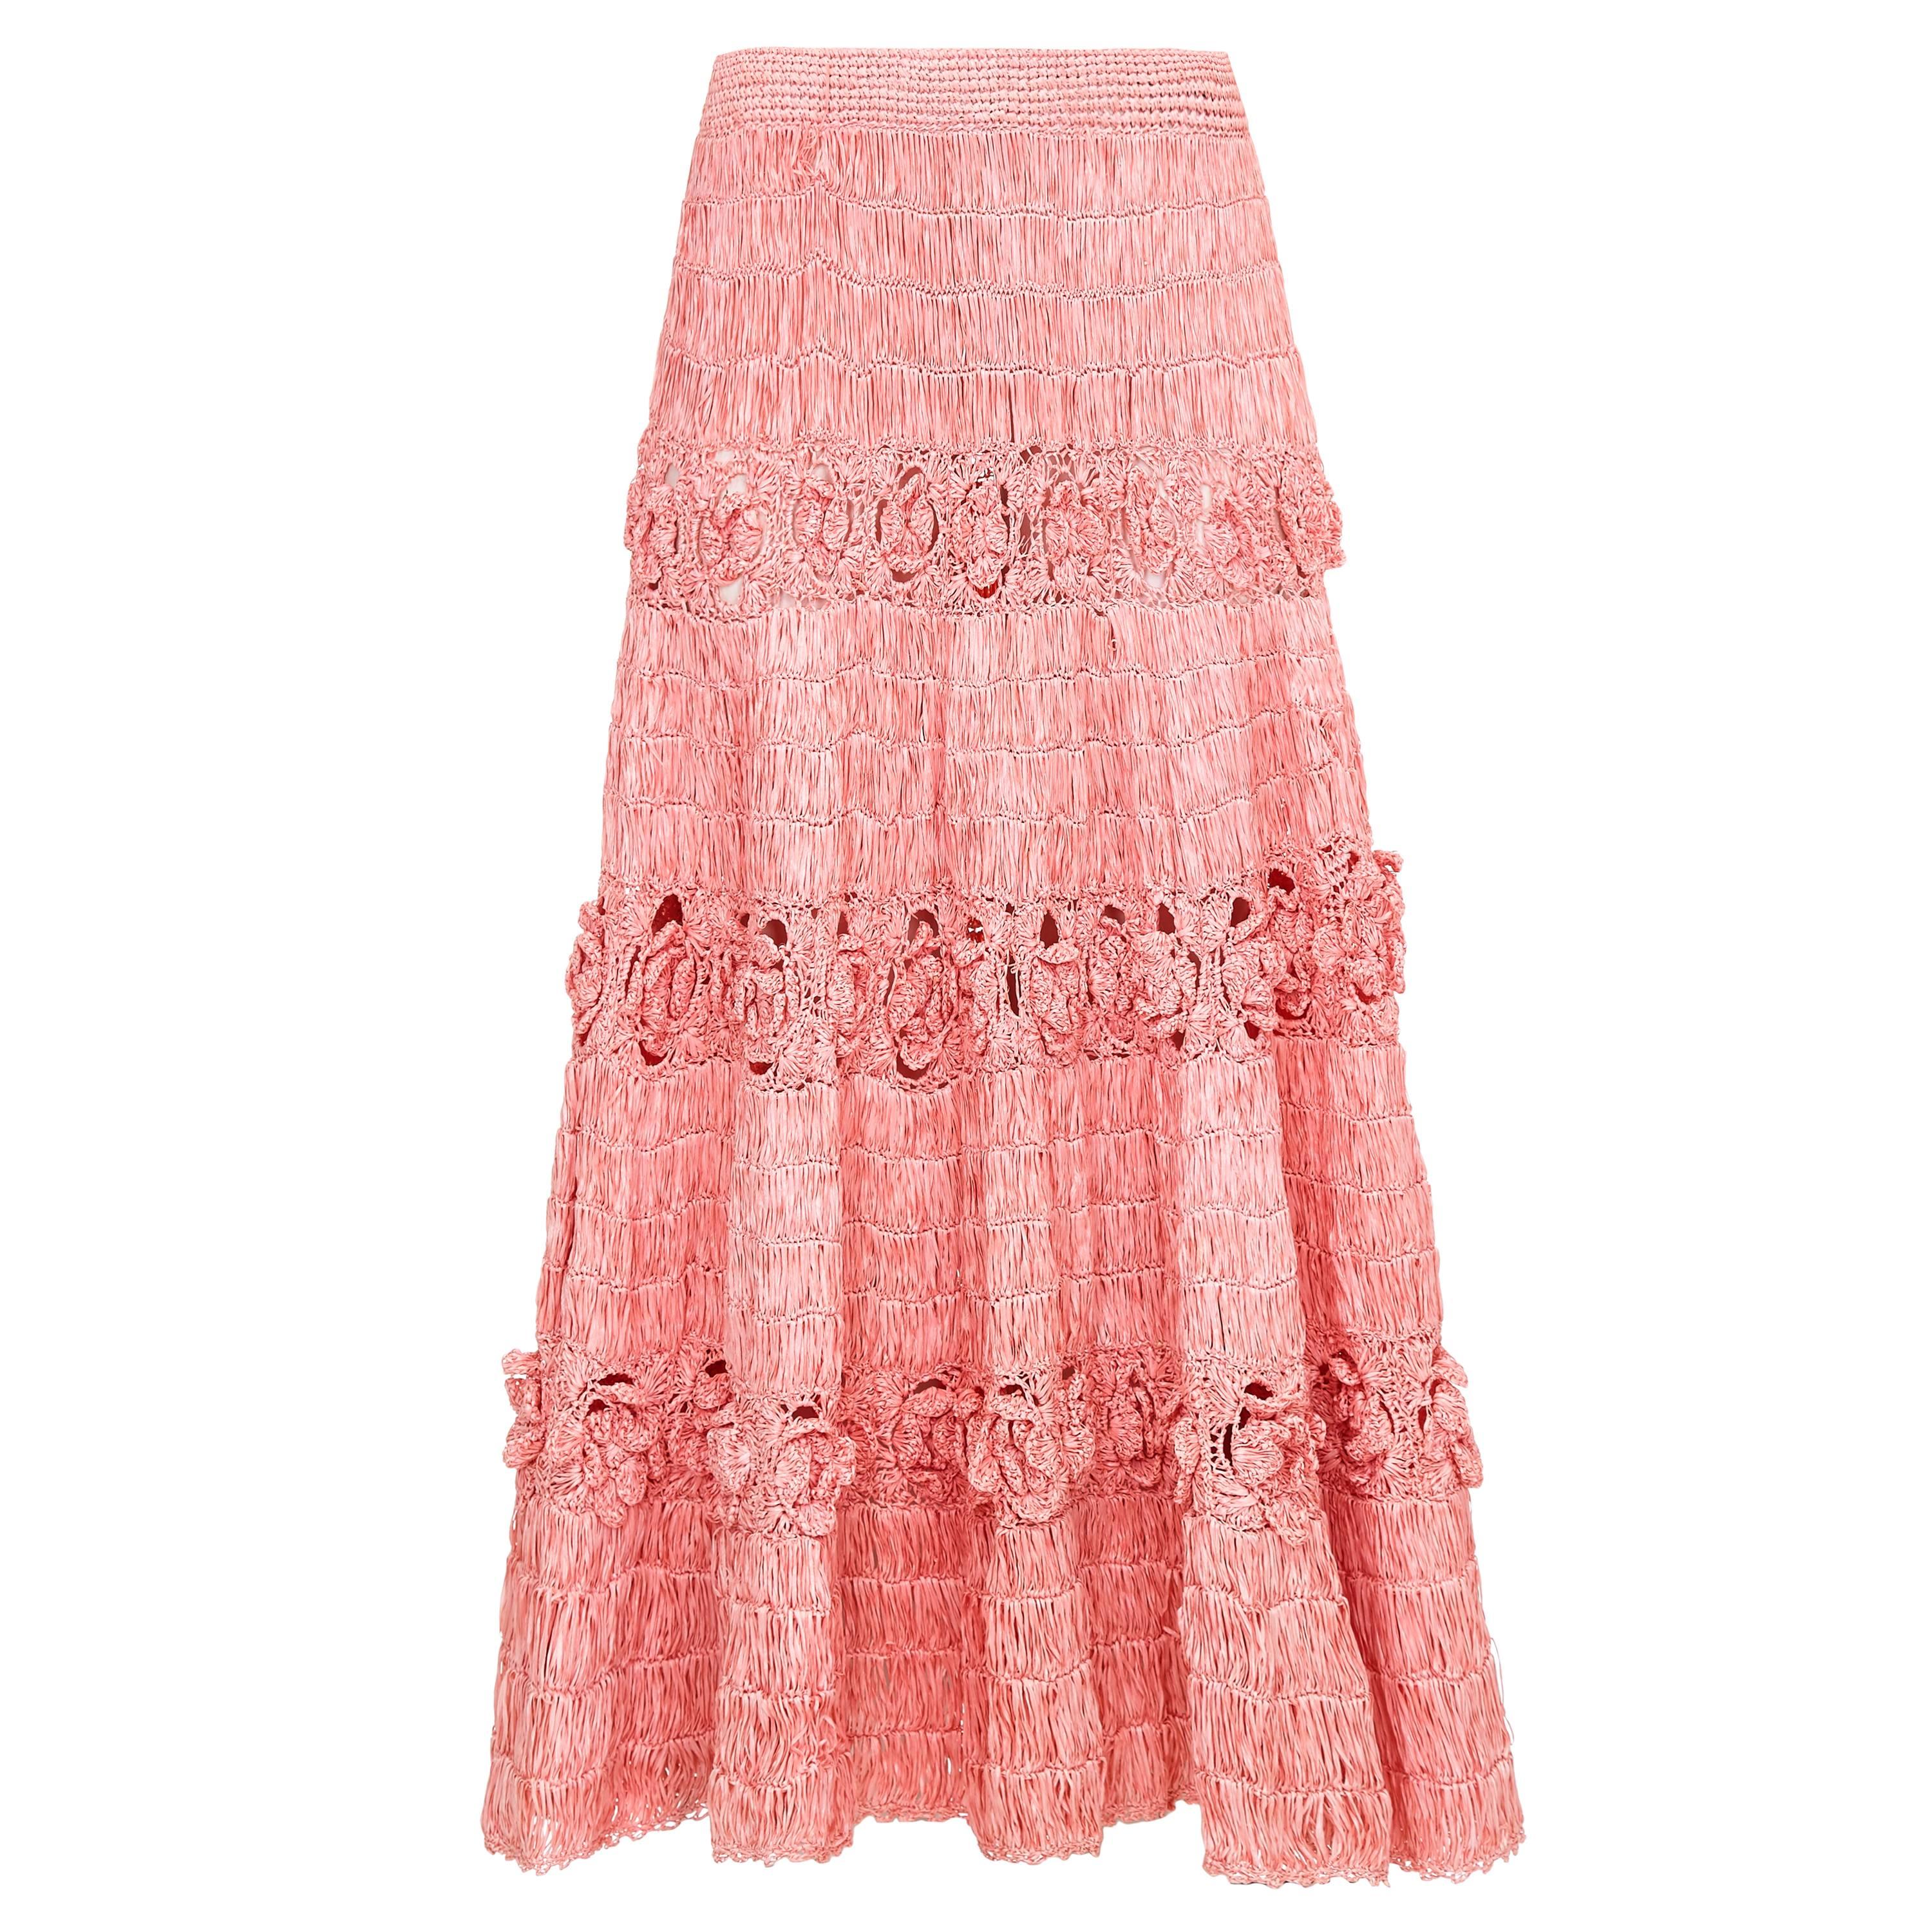 Extraordinary 1950s Pink Woven Raffia Skirt